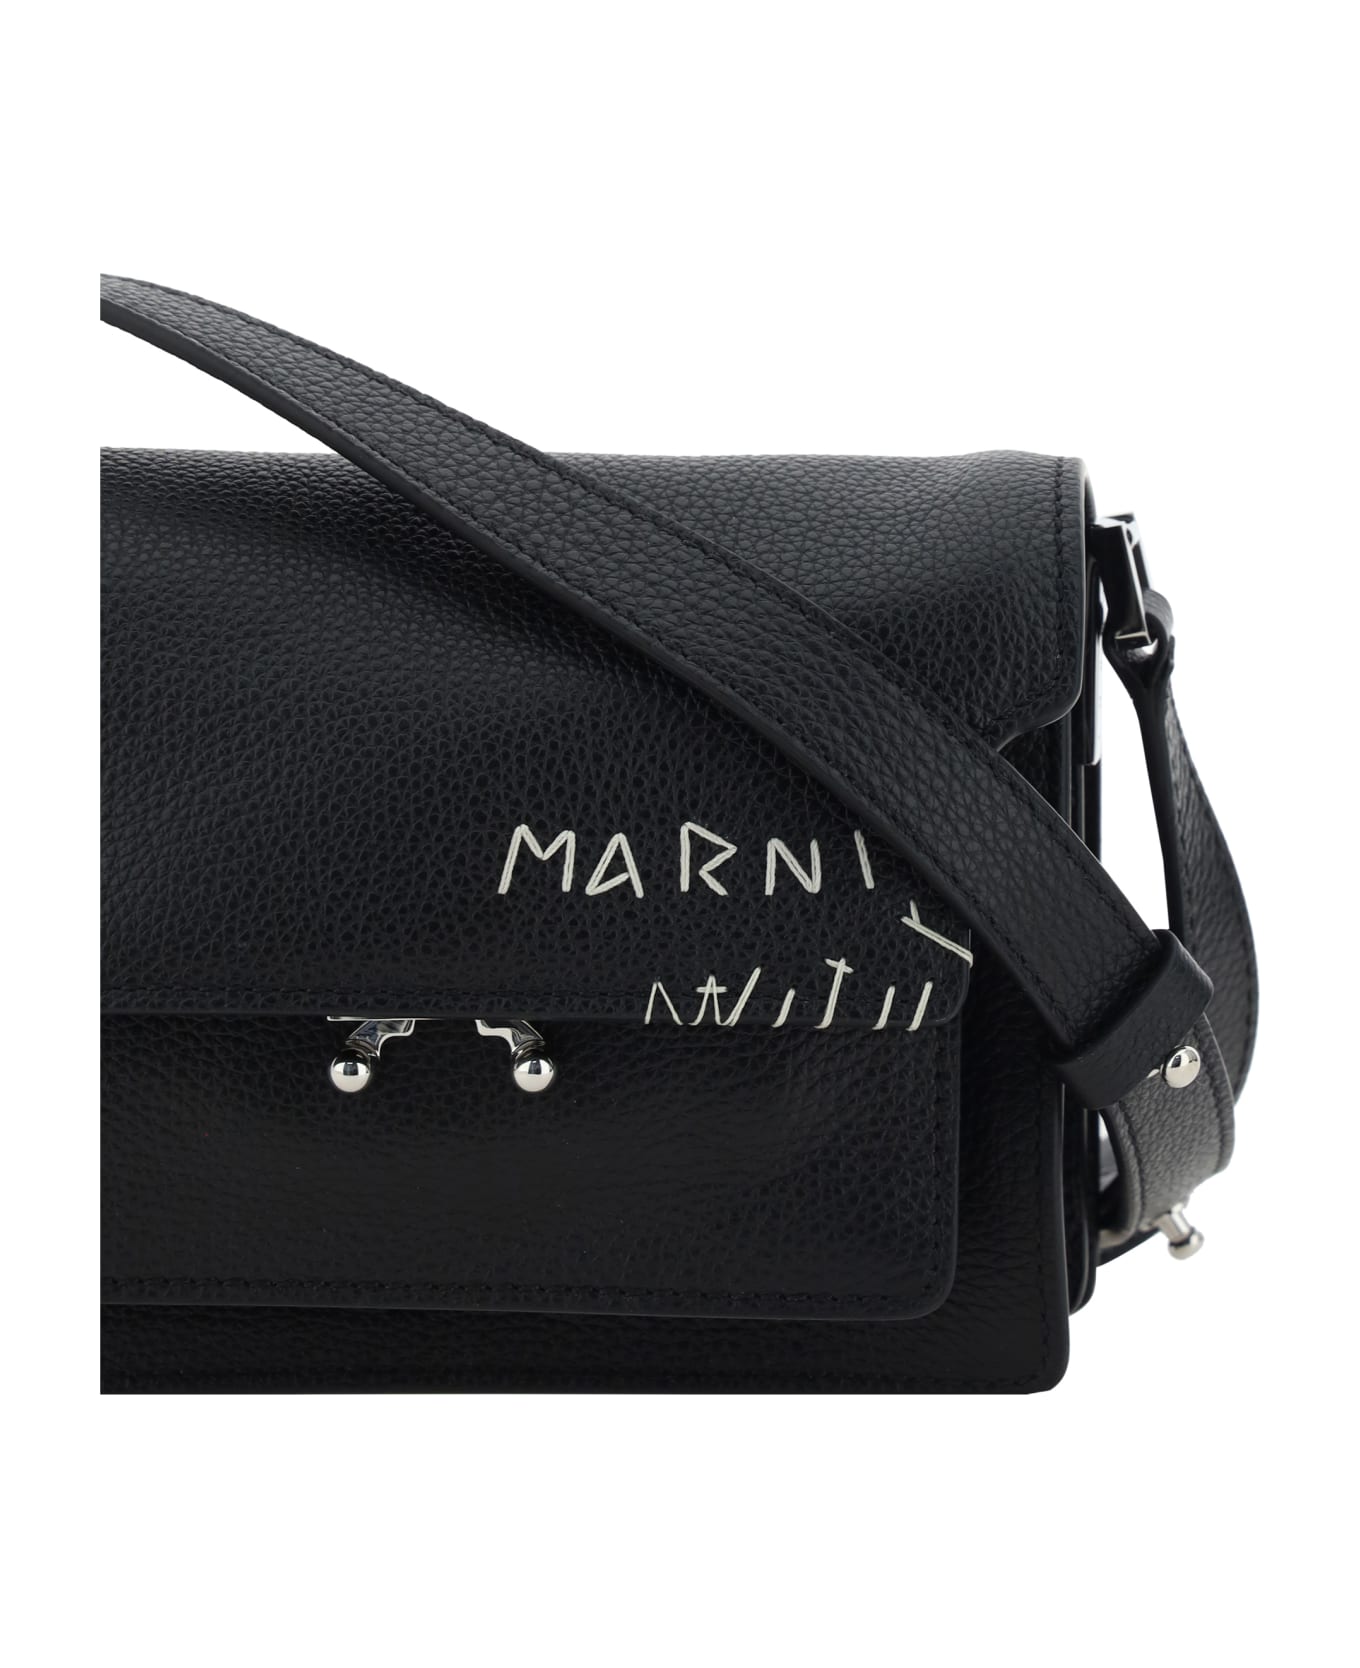 Marni Trunk Shoulder Bag - Black ショルダーバッグ